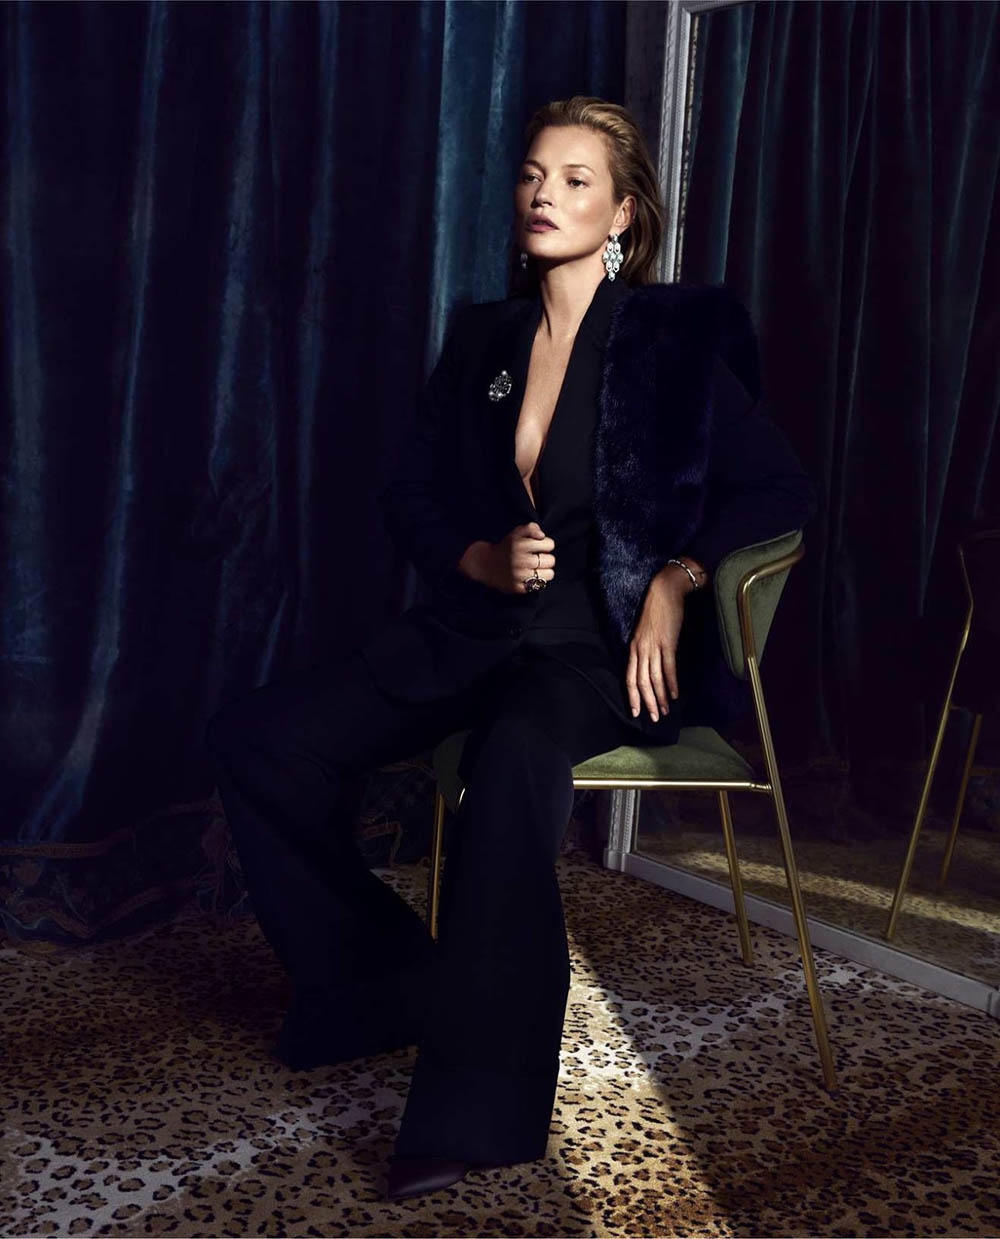 Kate Moss by Sølve Sundsbø for Harper’s Bazaar US December 2018